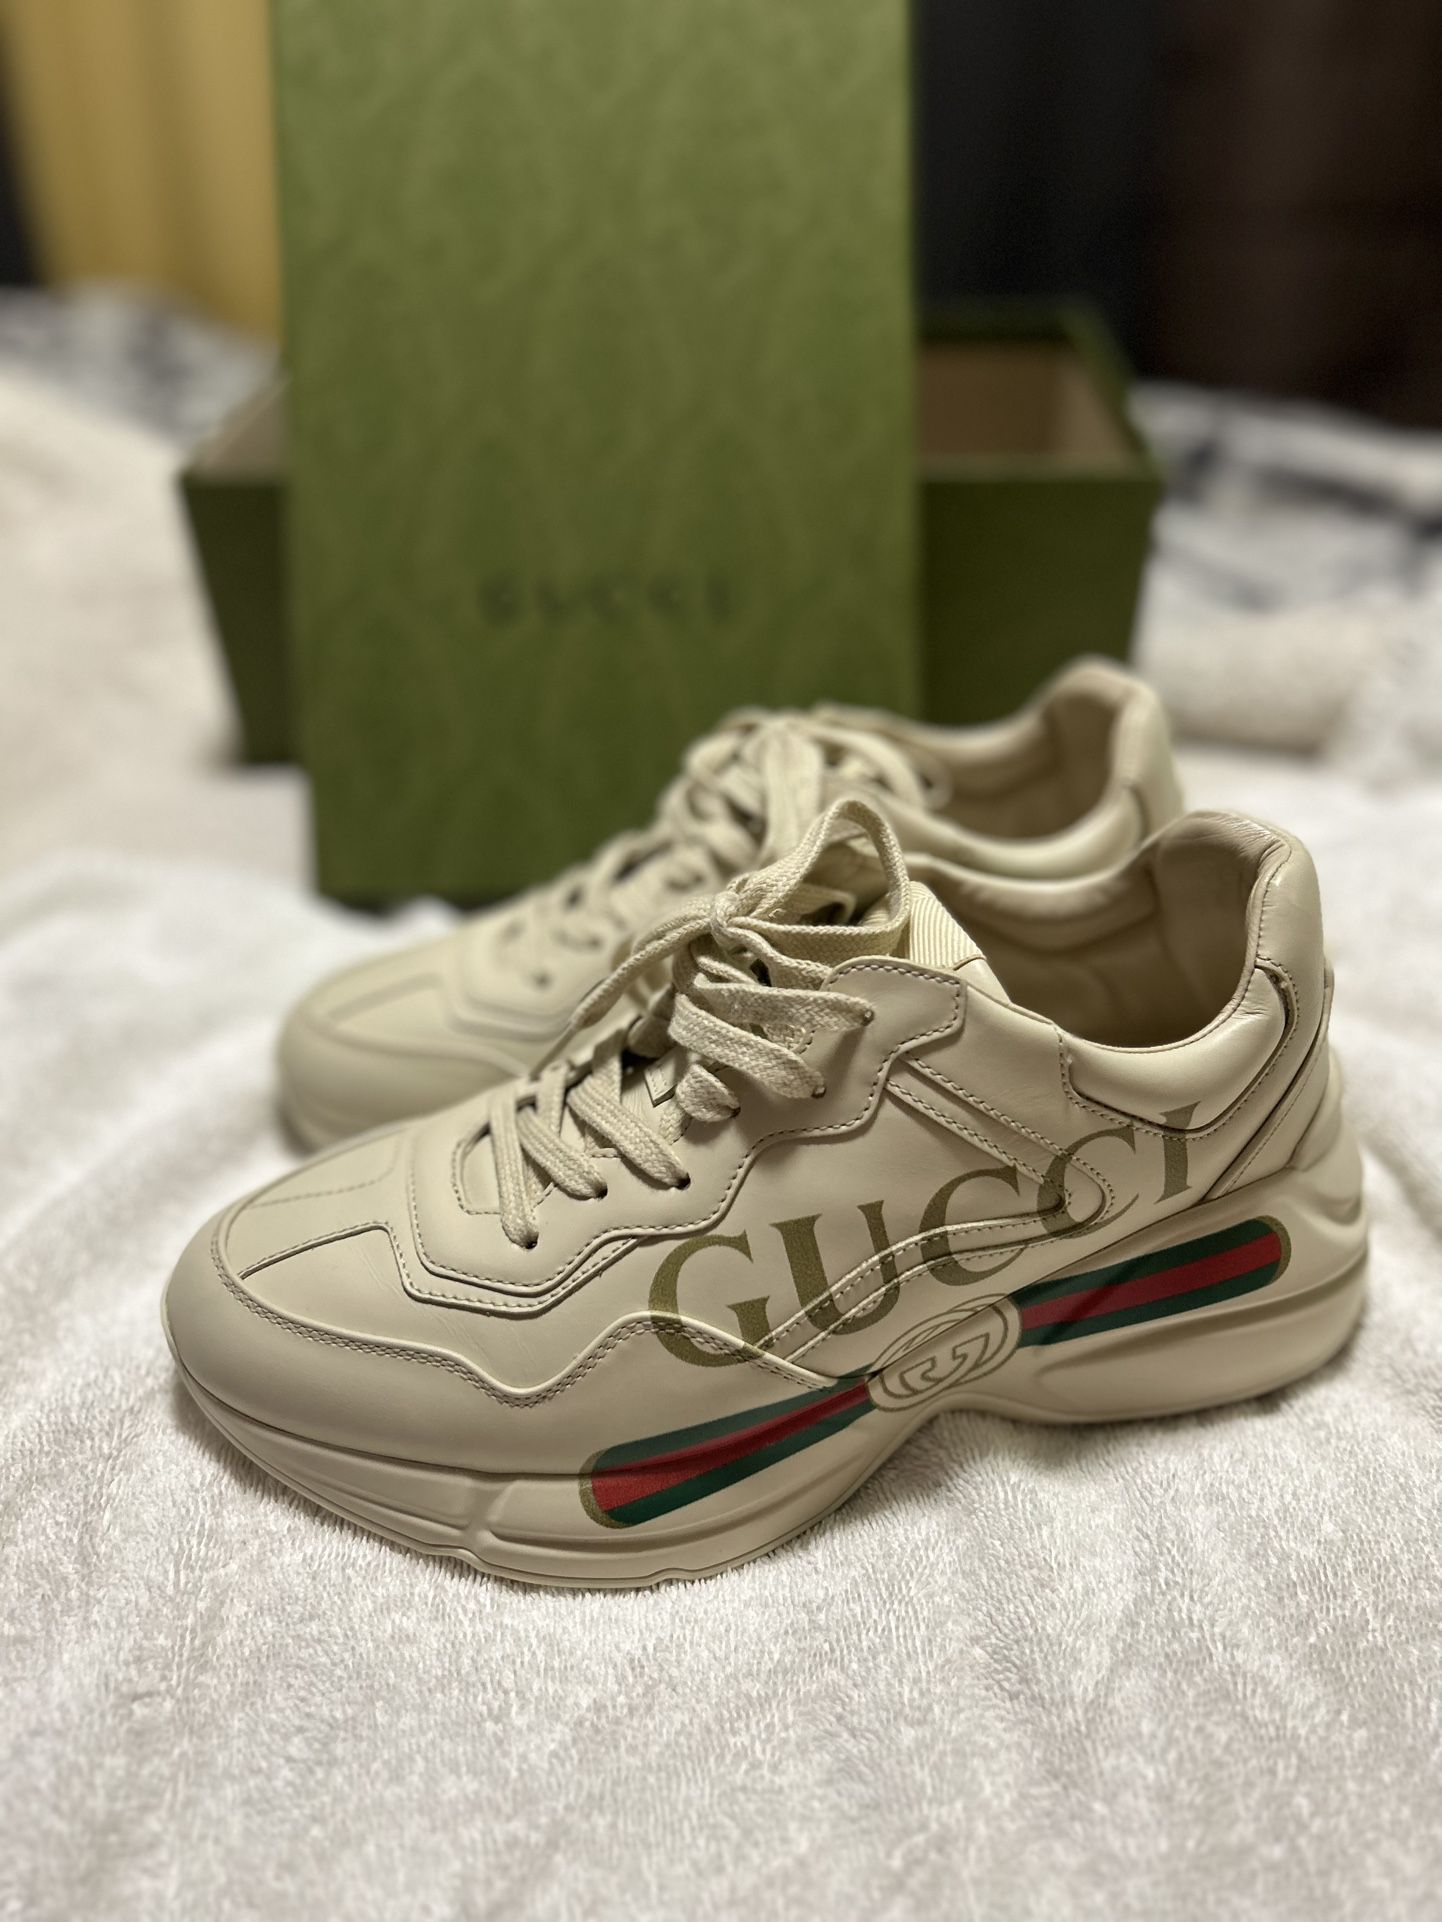 Kommerciel overgive Skyldfølelse Gucci Shoes for Sale in Eugene, OR - OfferUp